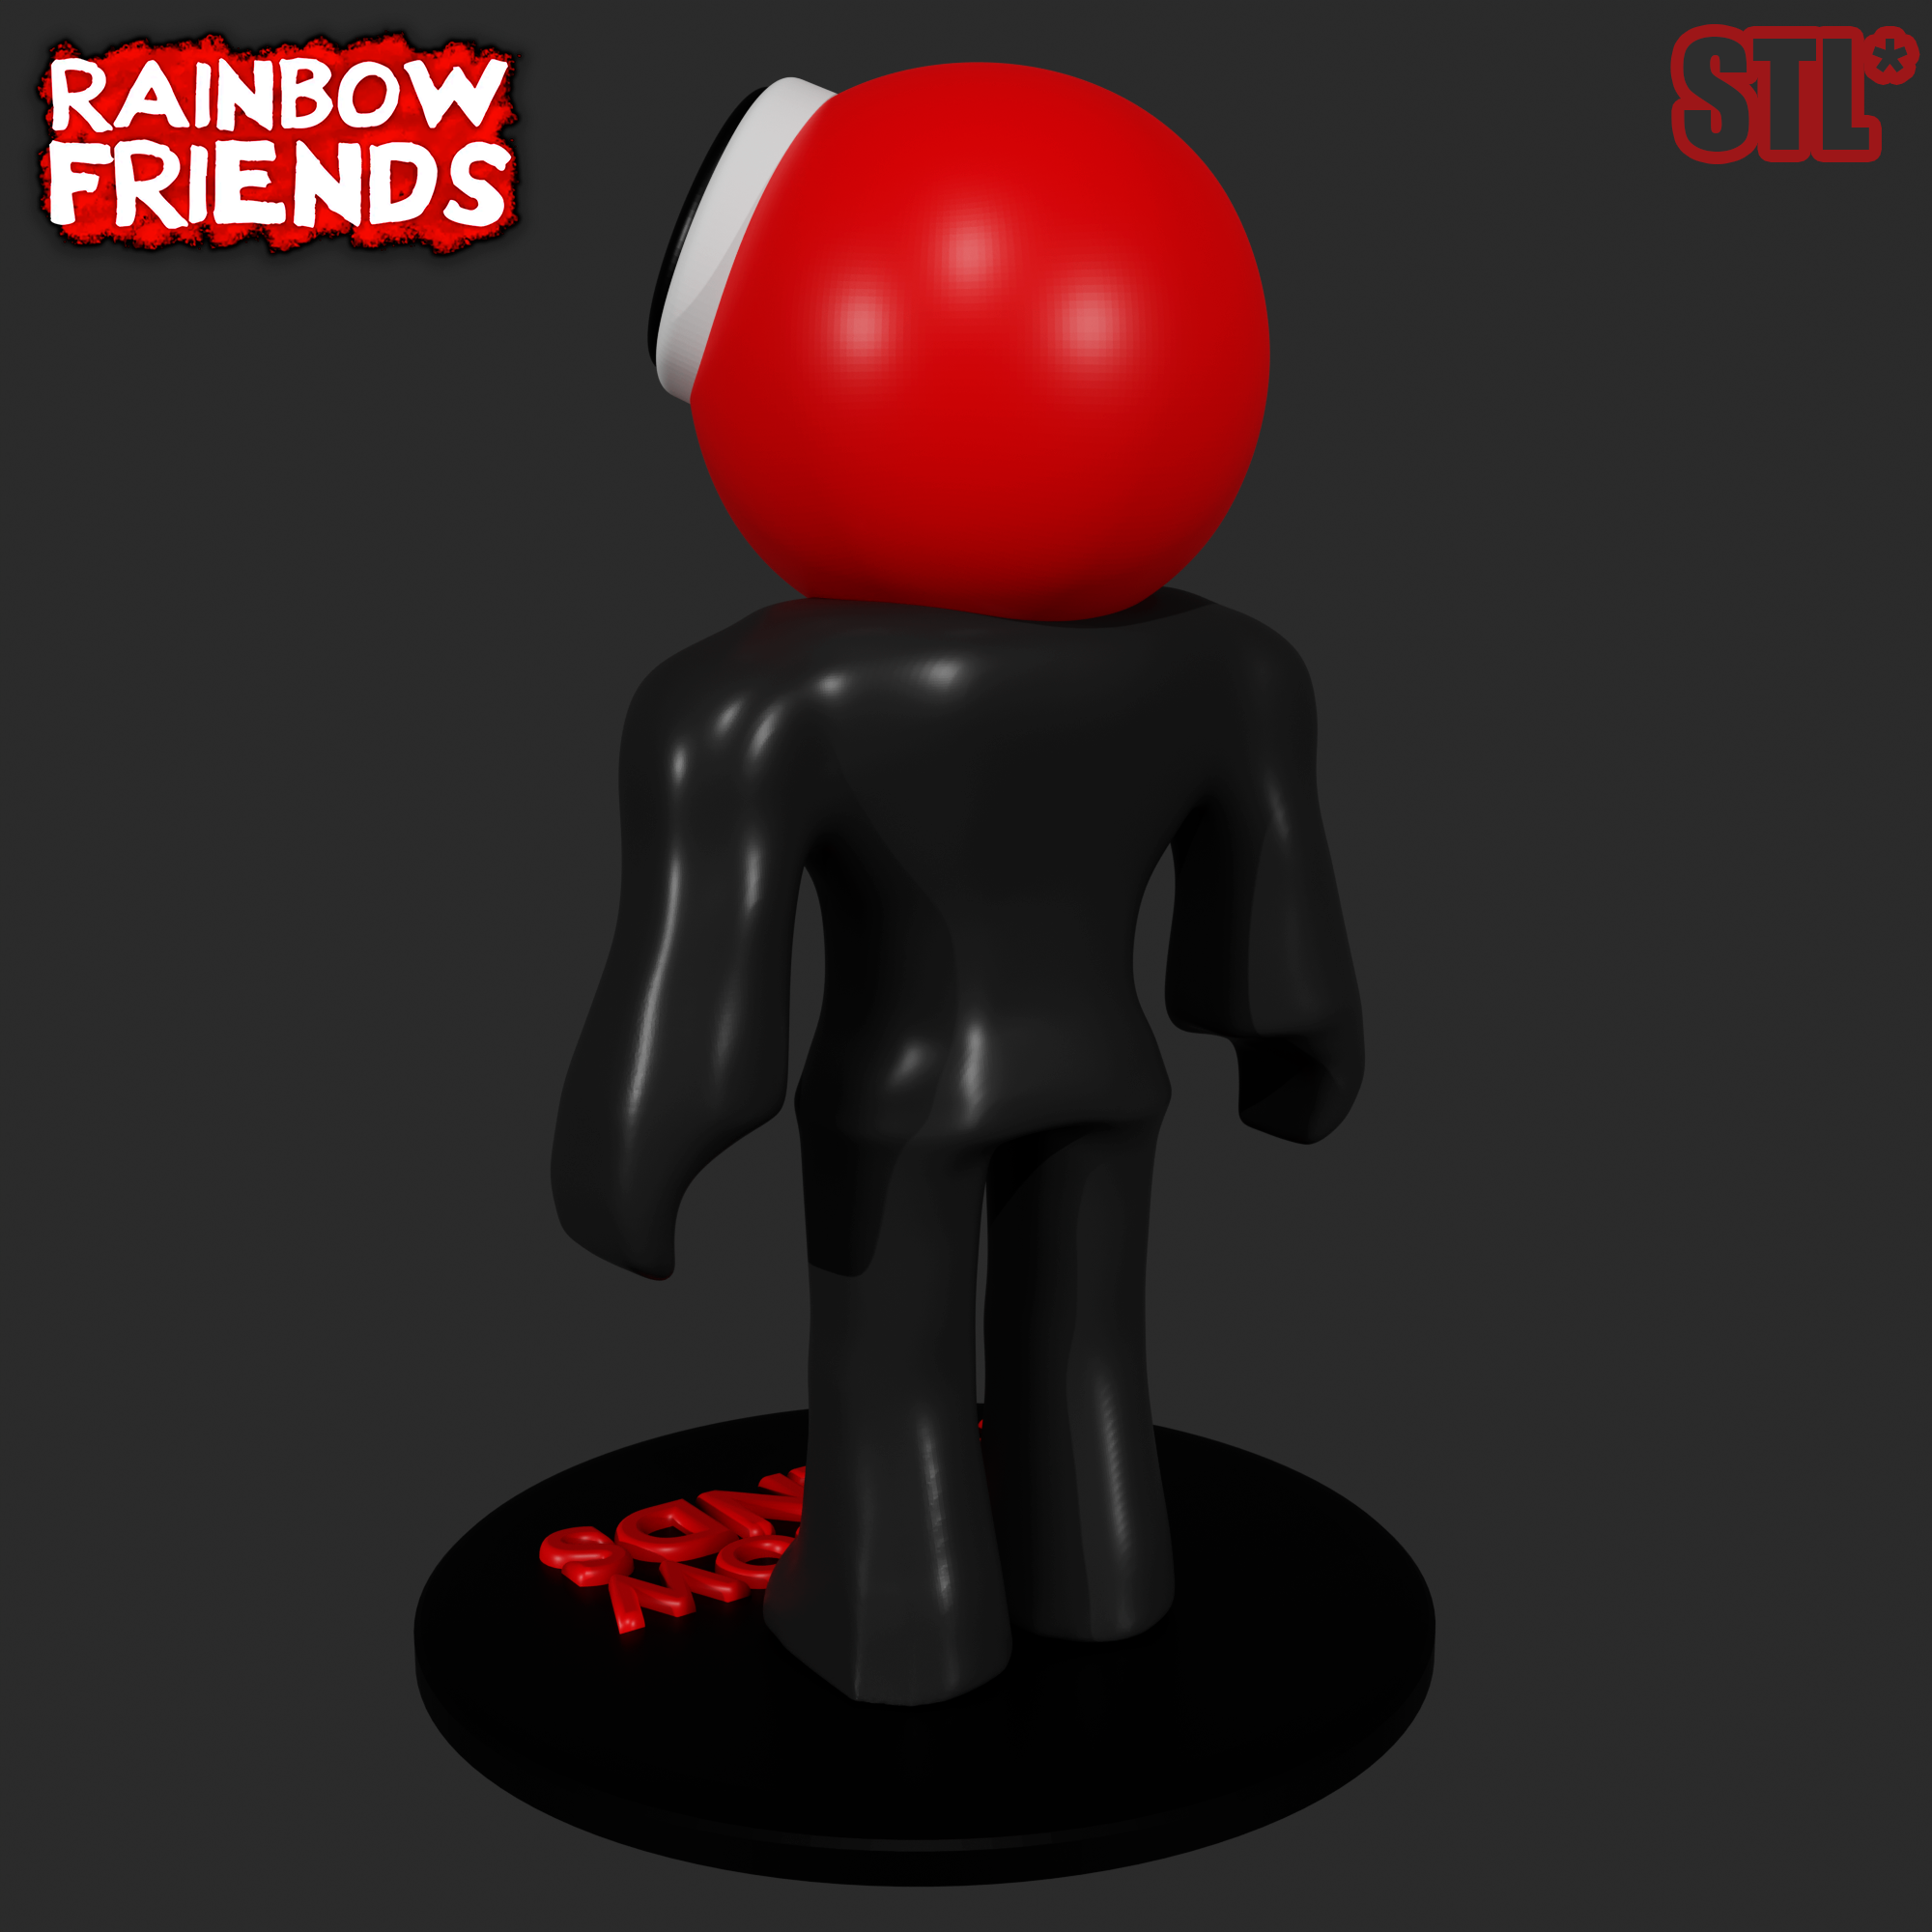 RED FROM ROBLOX RAINBOW FRIENDS, 3D FAN ART